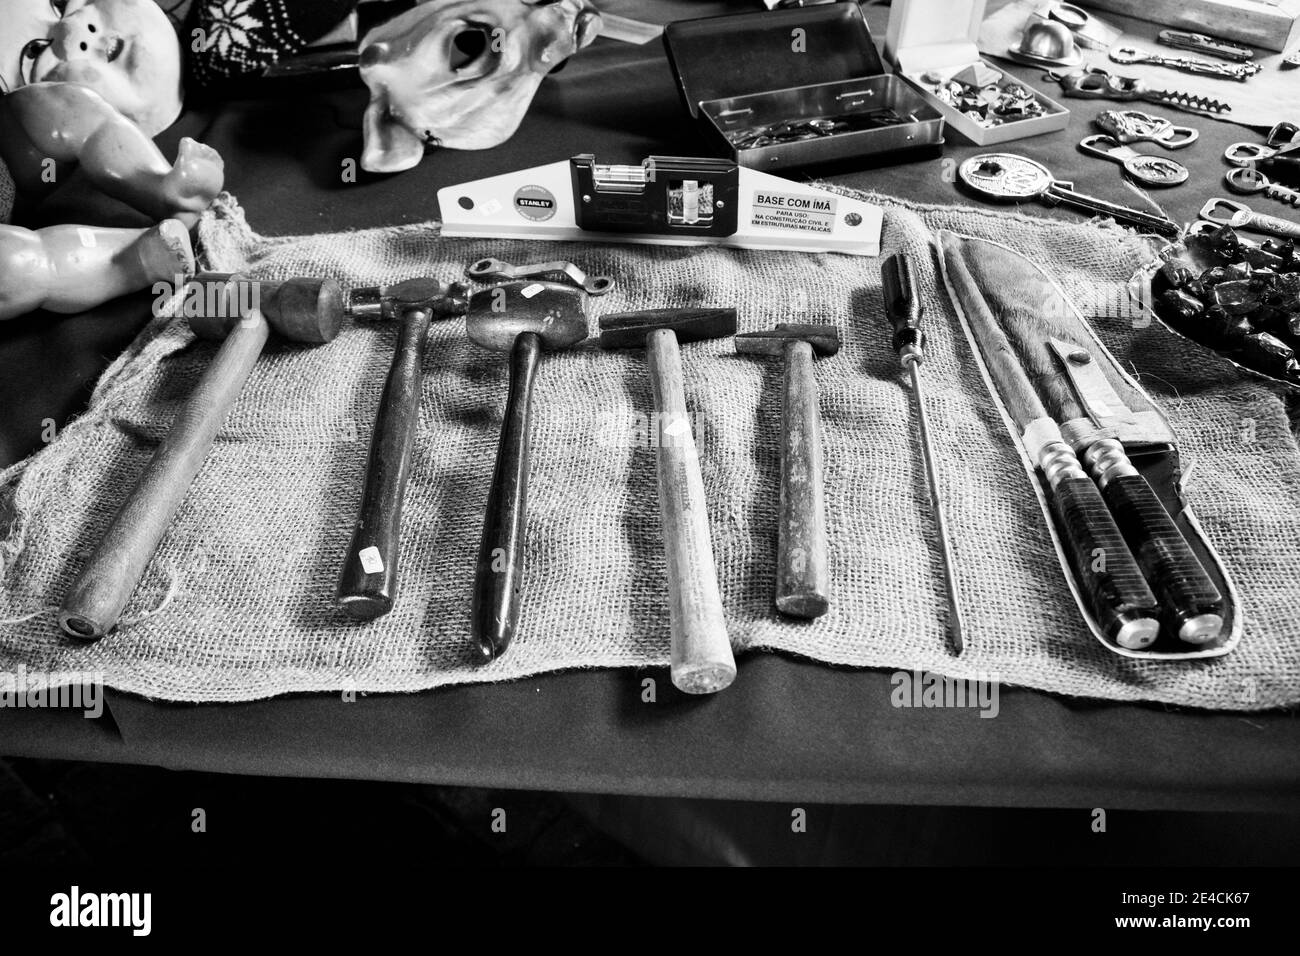 Sao Paulo / SP / Brasil - 01 03 18: Différents types d'outils comme le marteau pour les ongles, le gavage, le couteau, le tournevis et d'autres choses comme la poupée, les masques Banque D'Images